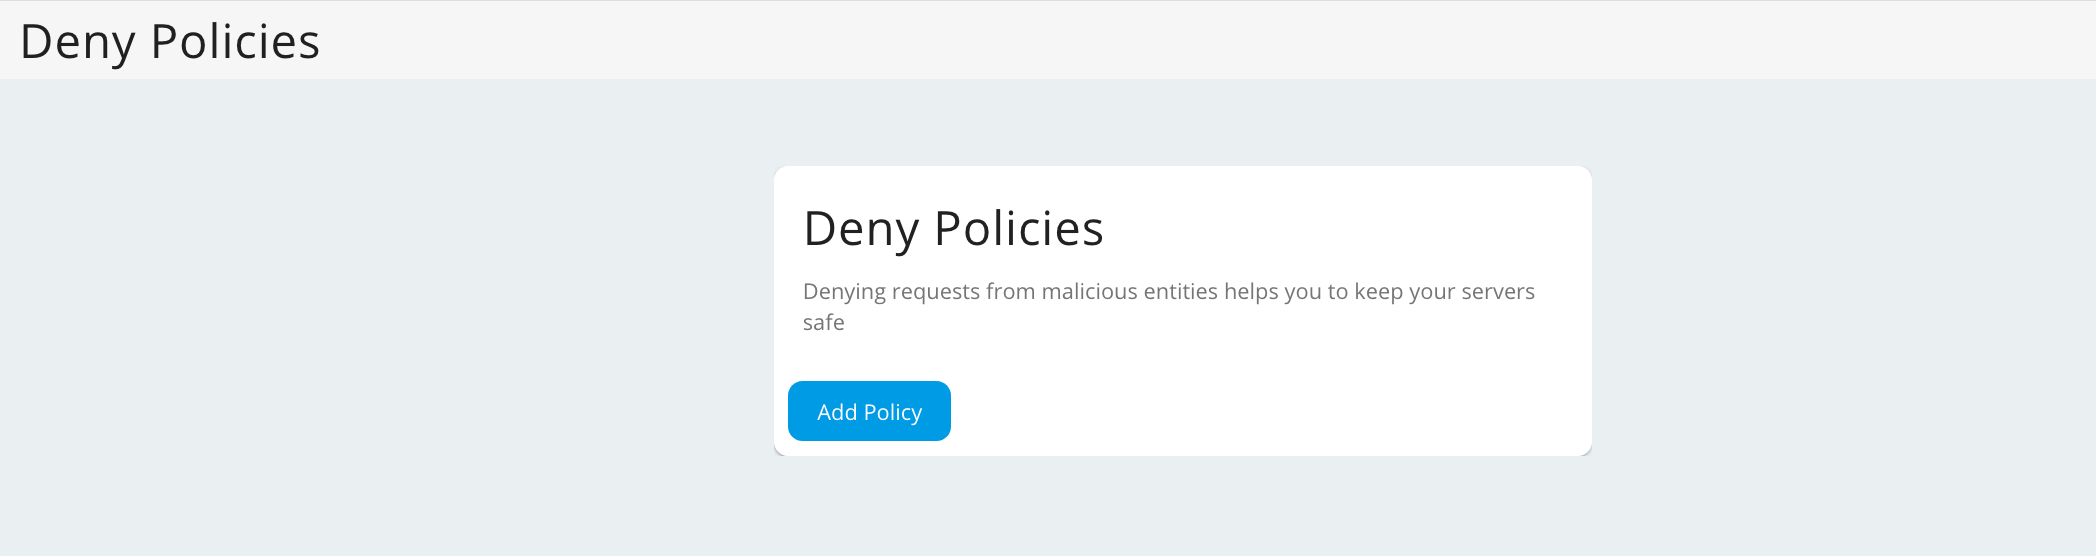 Add denied policy